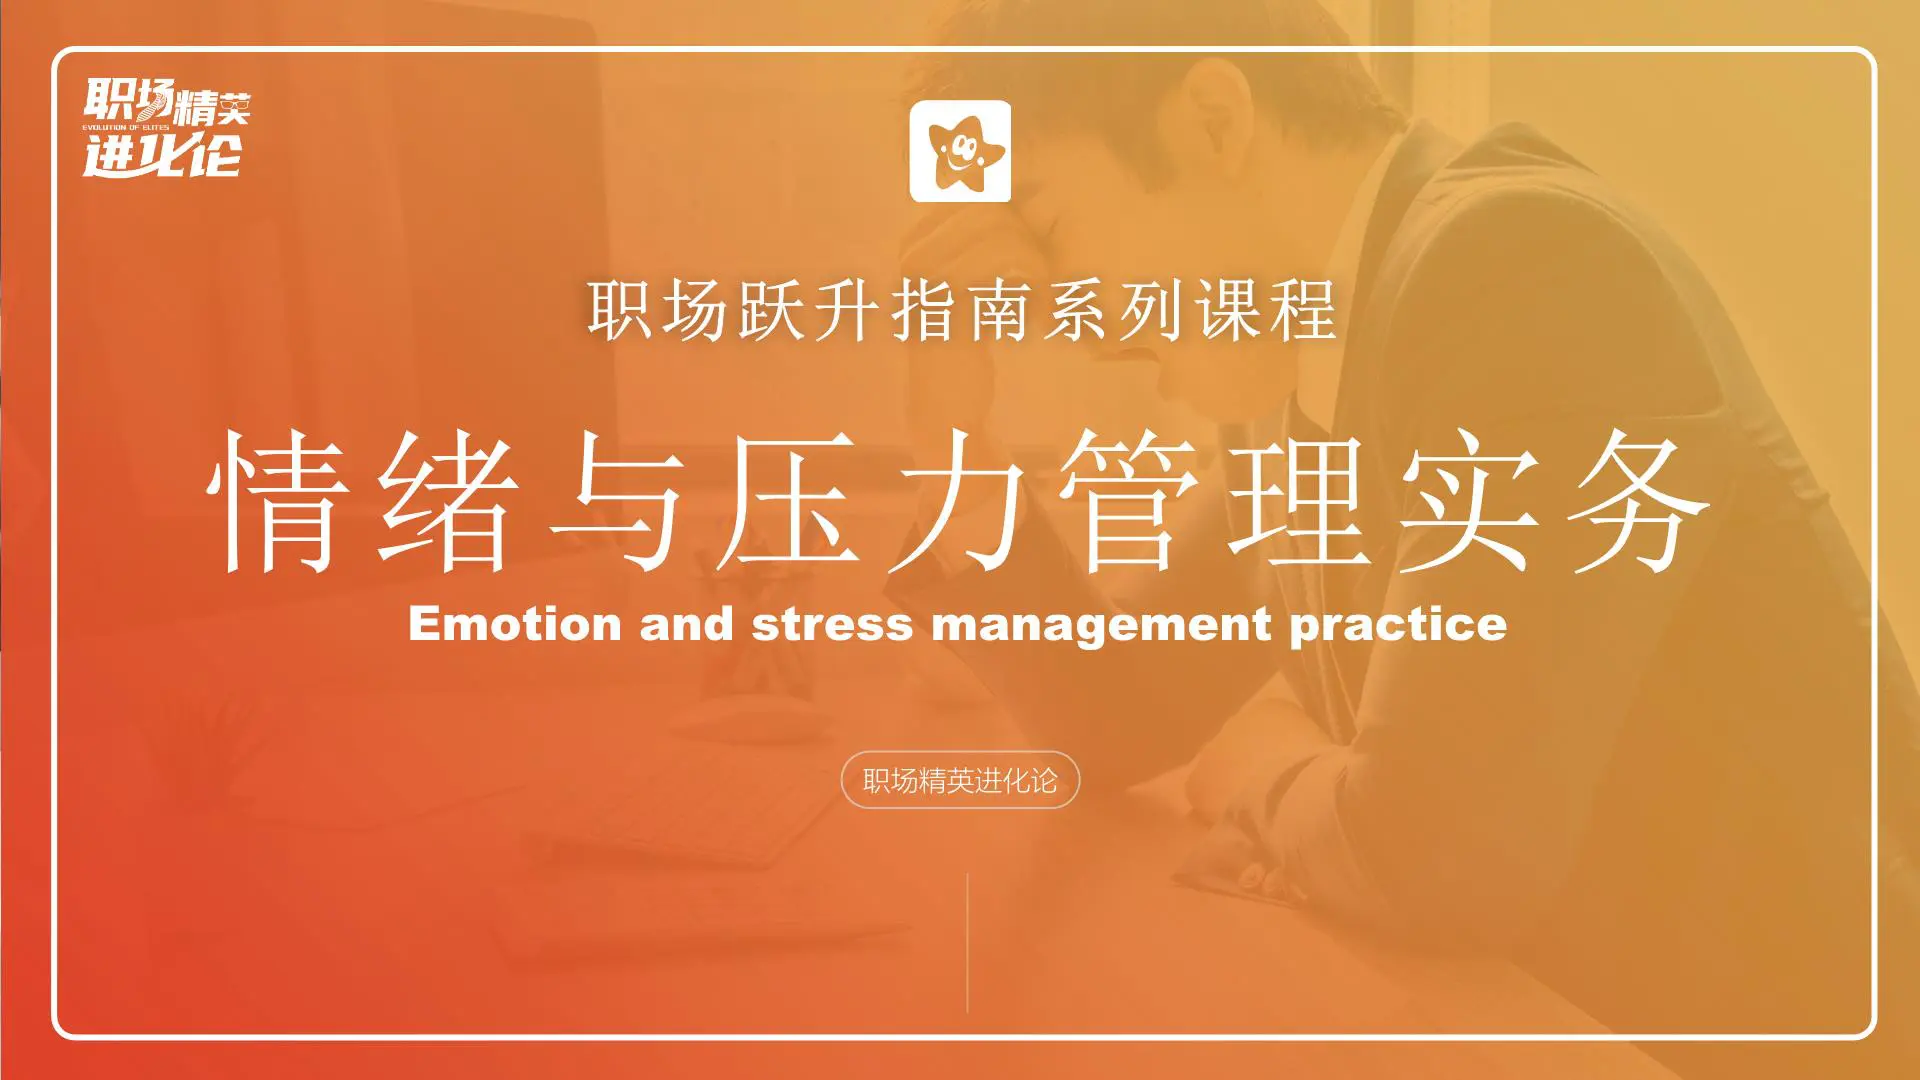 【职场精英进化论】情绪与压力管理教学课件插图1